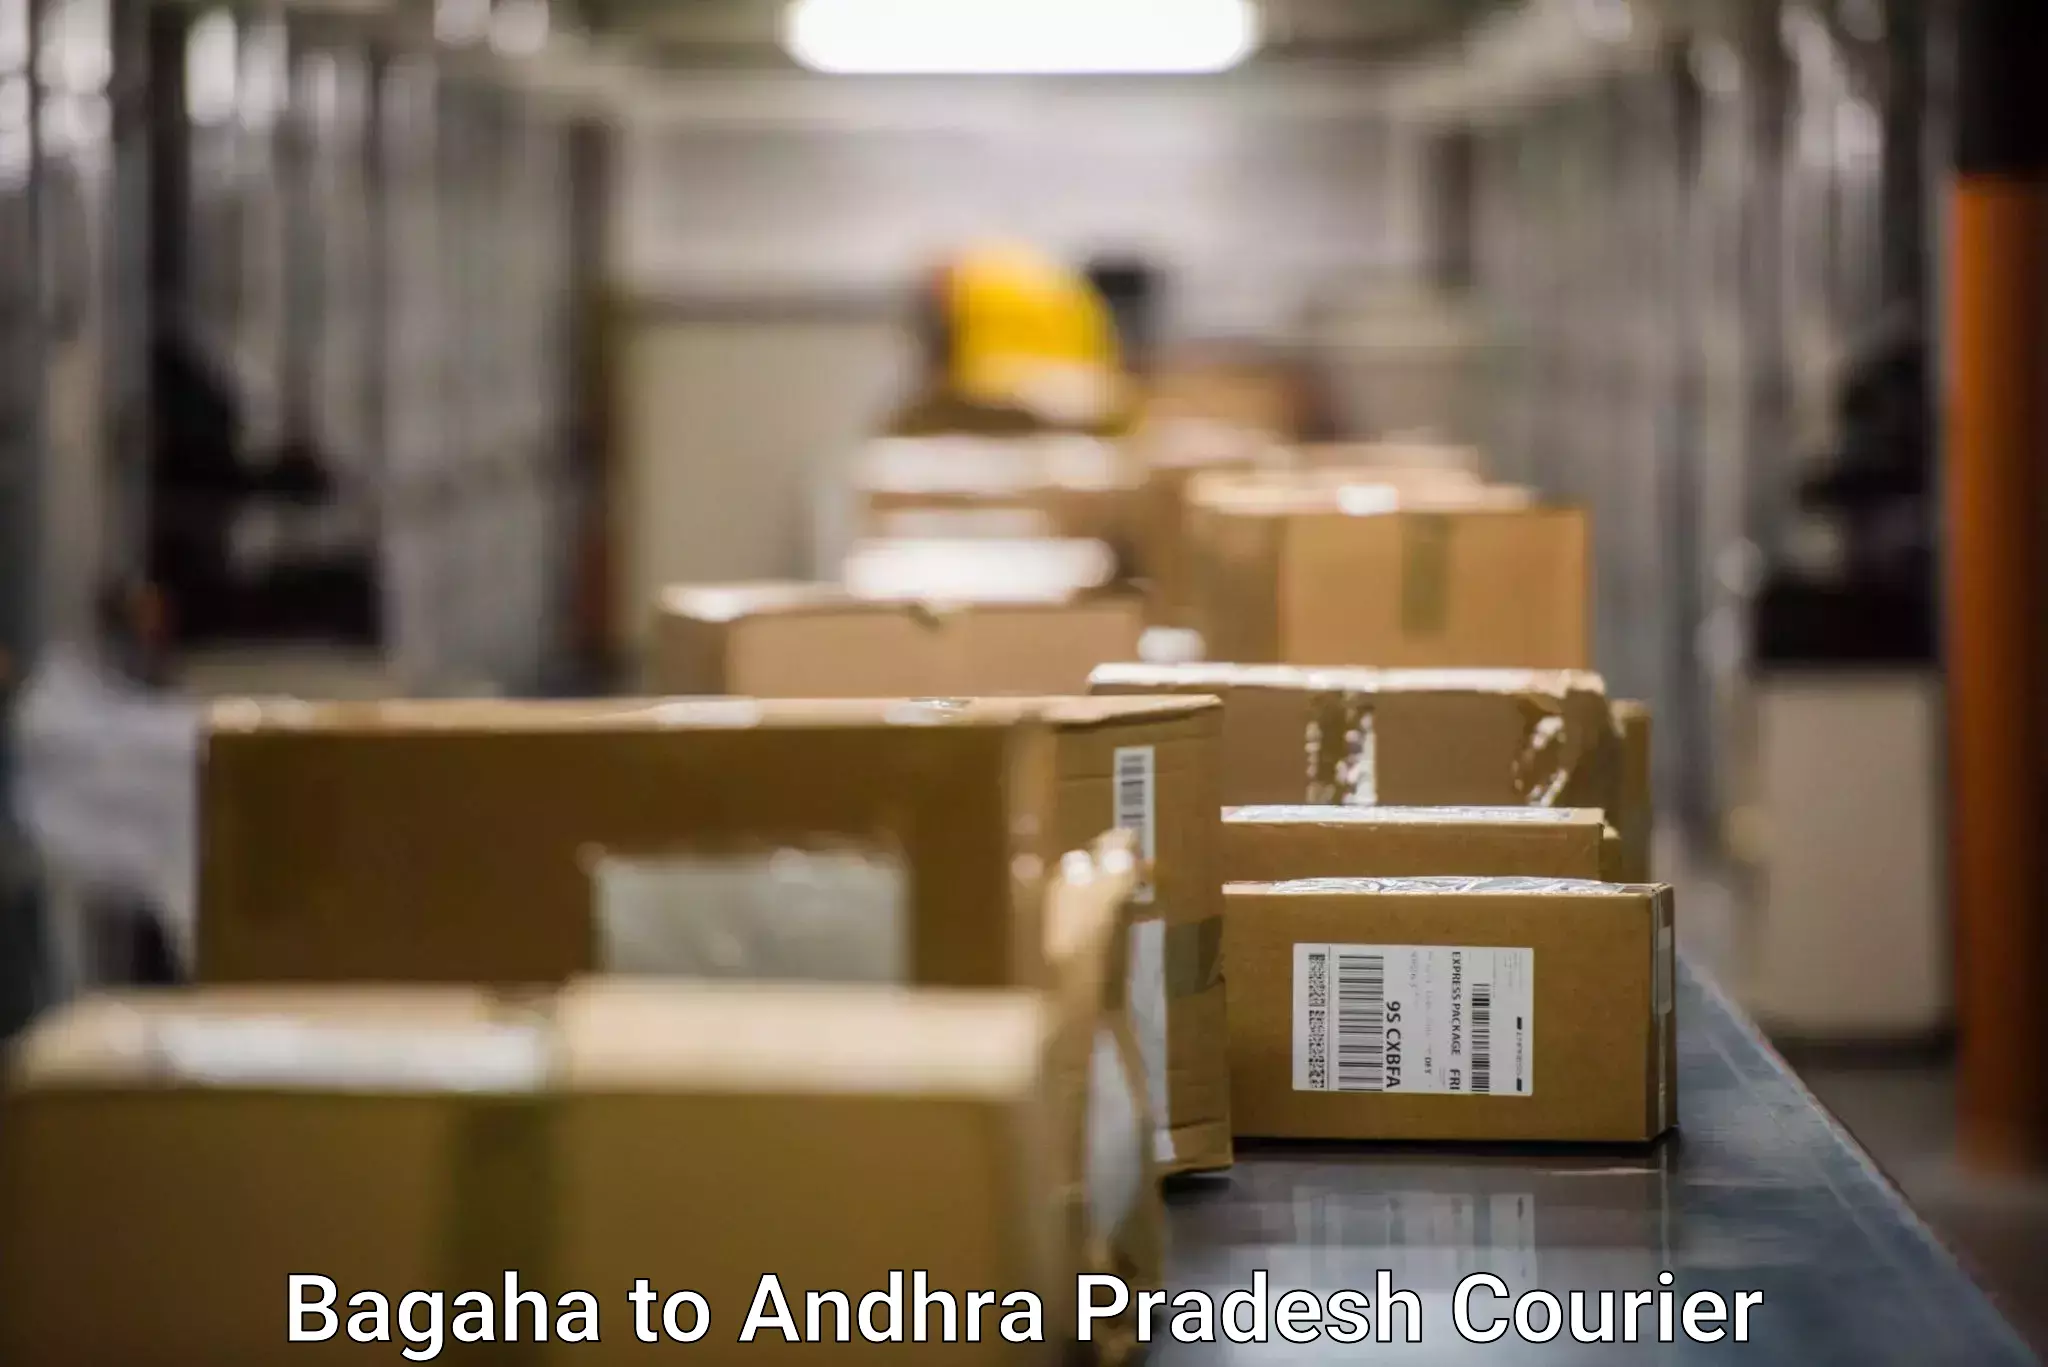 Shipping and handling Bagaha to Narasaraopet